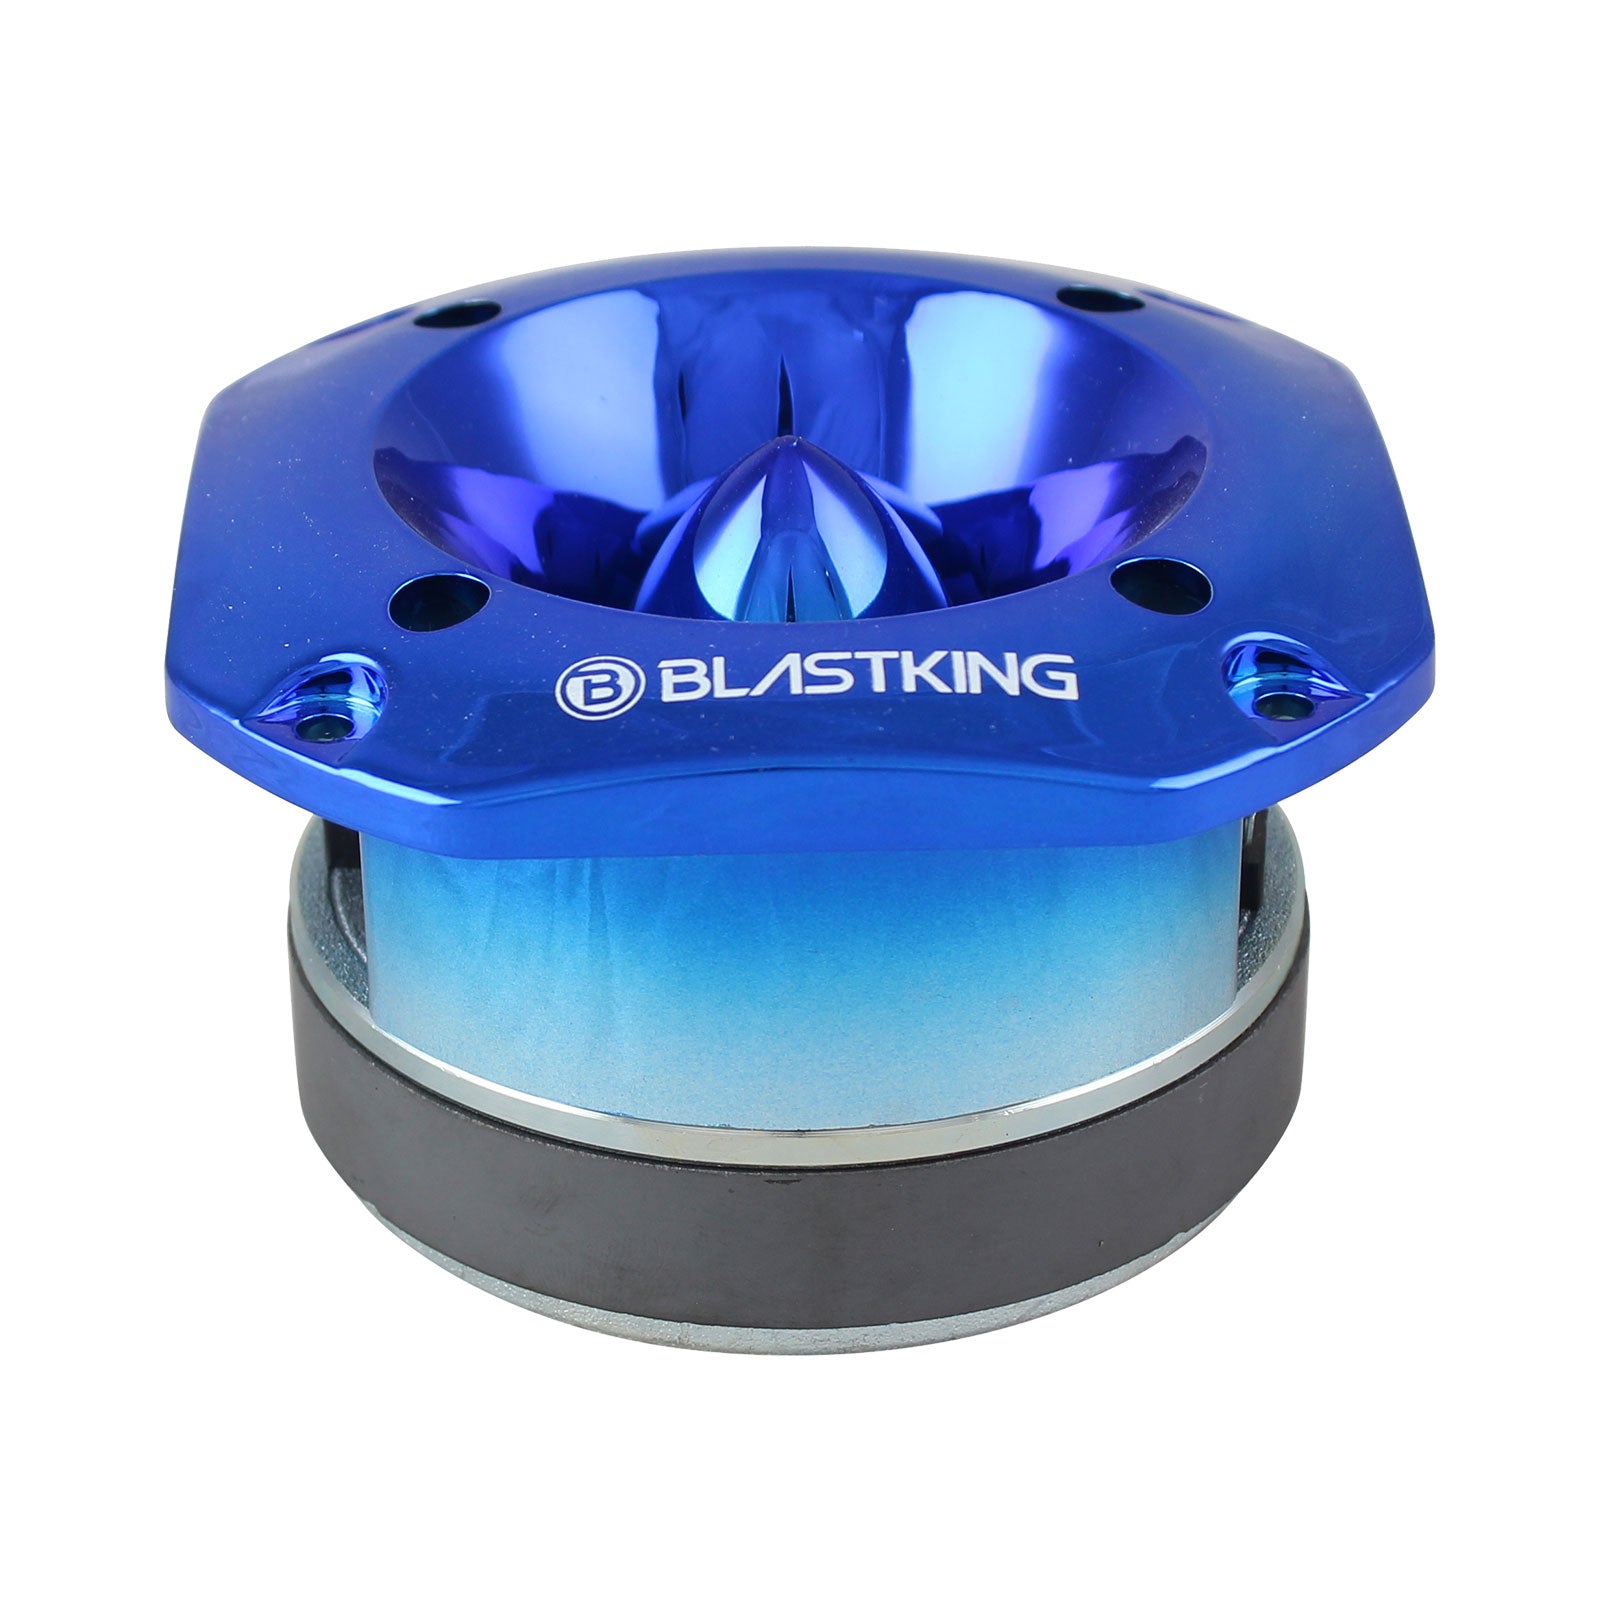 Blastking TW2000-BLU-K2 (2) 500 Watts 4x4 inch 1.5 inch VC Titanium Bullet Tweeter Blue